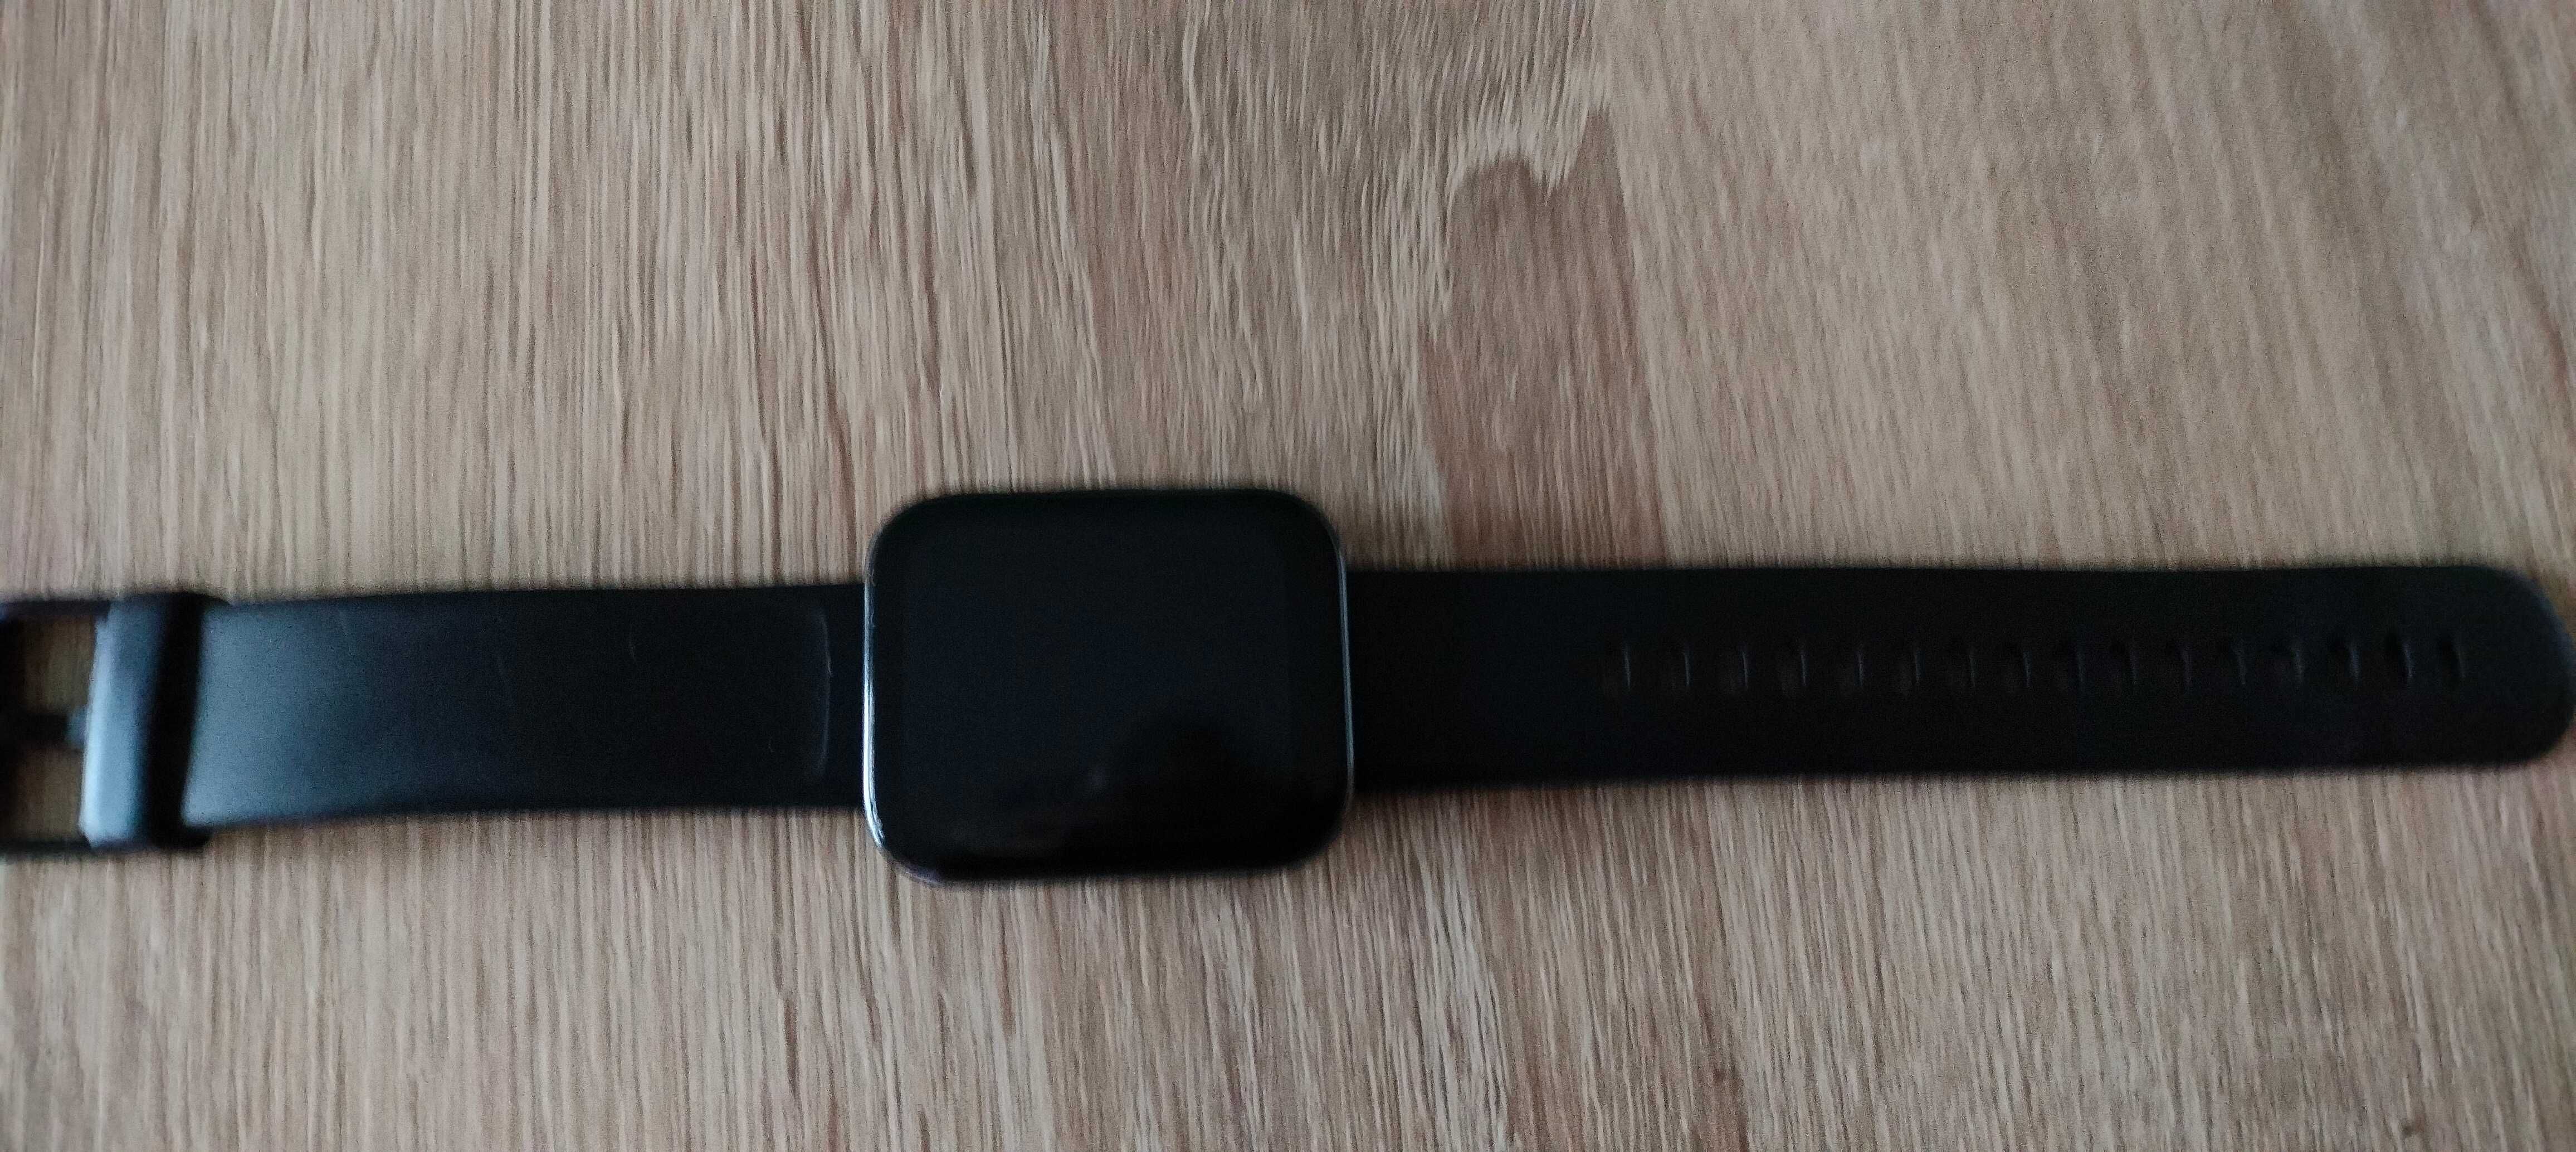 SmartWatch Realme Watch 3